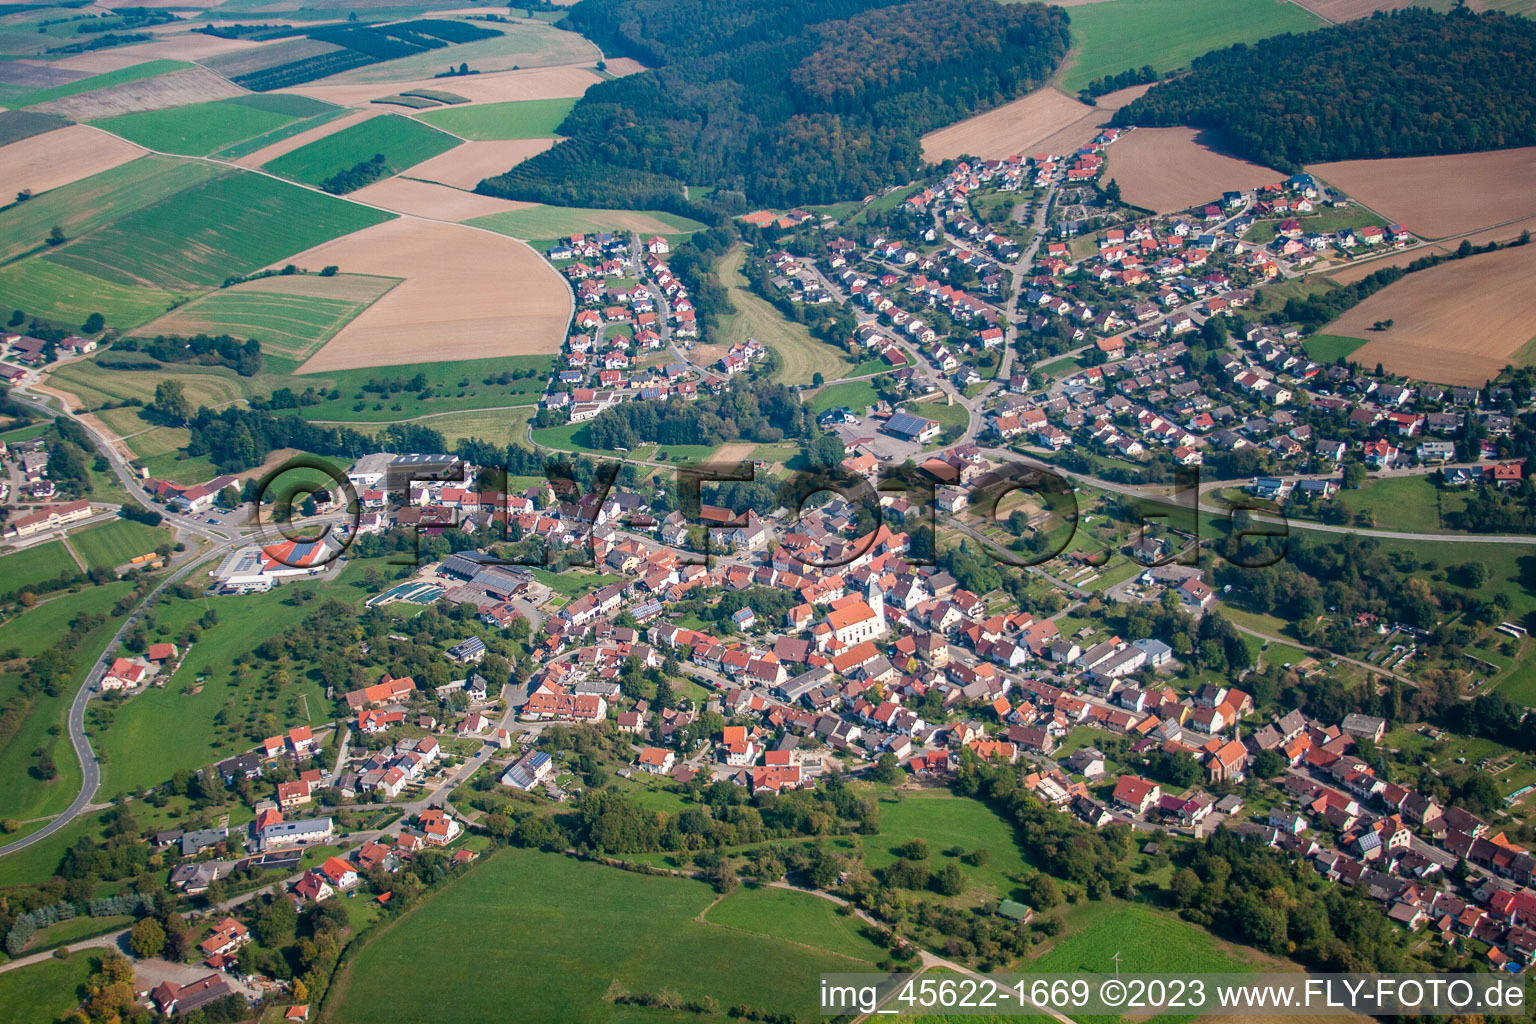 Luftbild von Ortsteil Sulzbach in Billigheim im Bundesland Baden-Württemberg, Deutschland